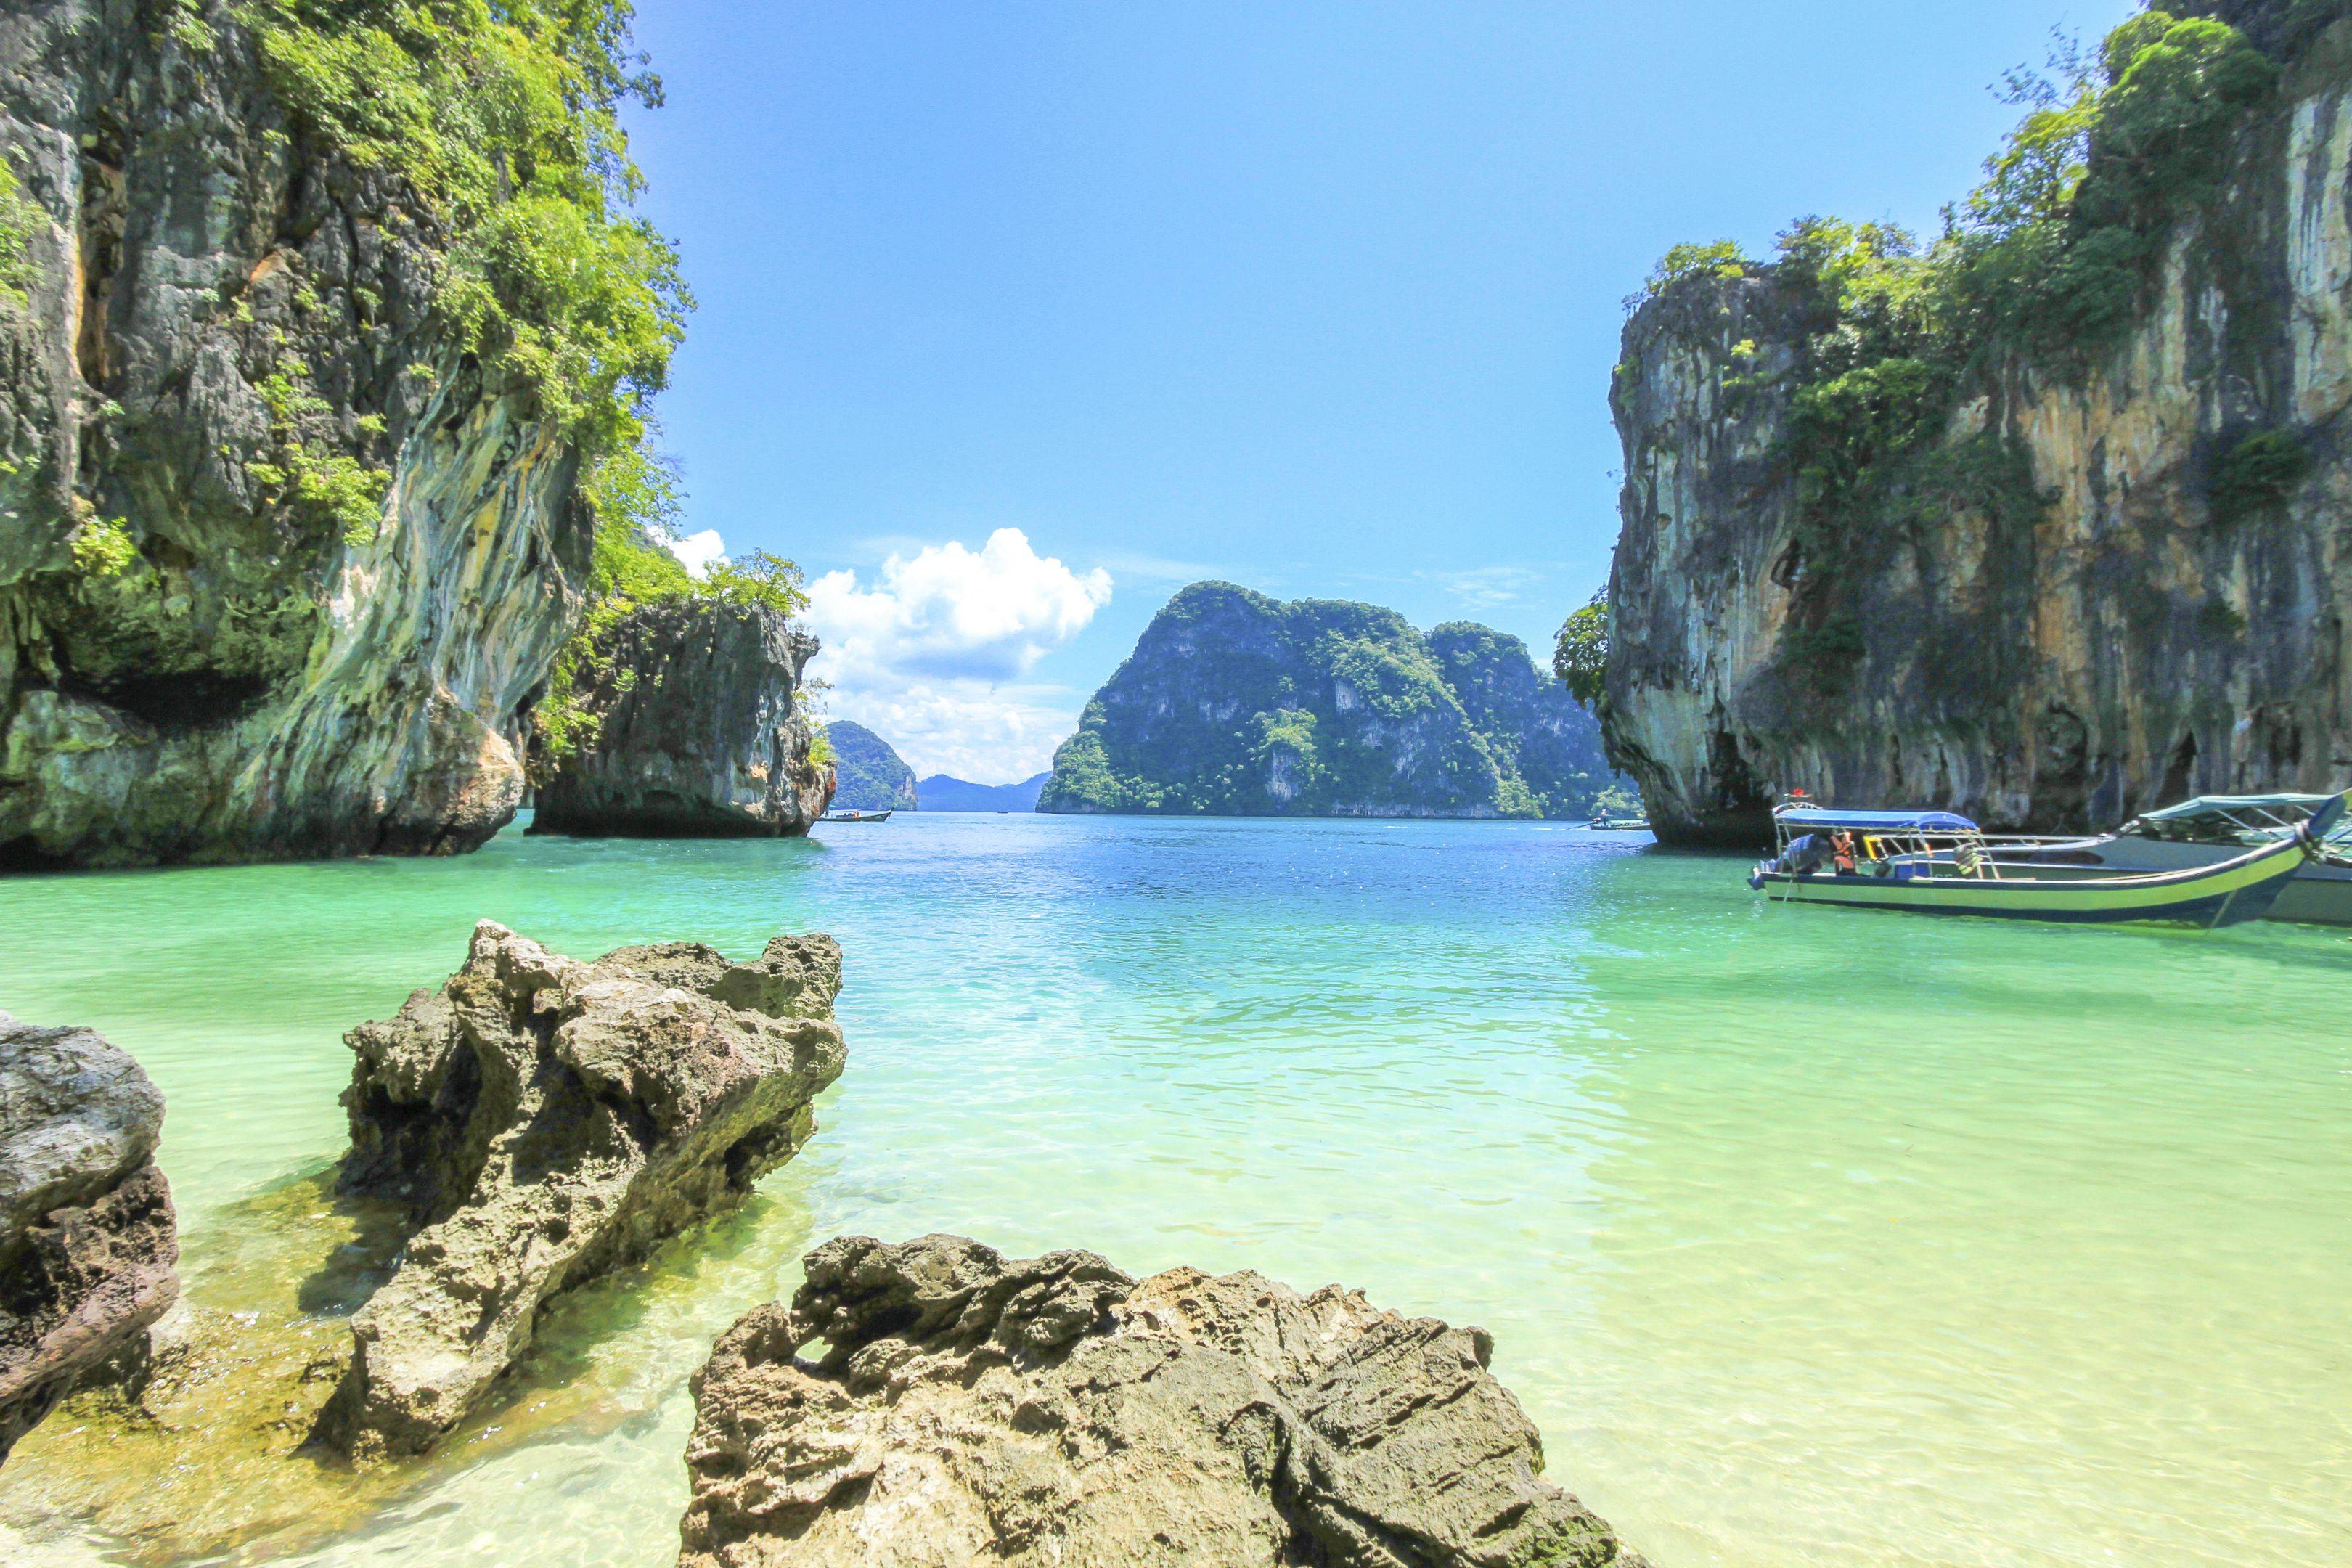 Visita a las islas Phi Phi, monkey beach, peces de colores y fondos coralinos os esperan!